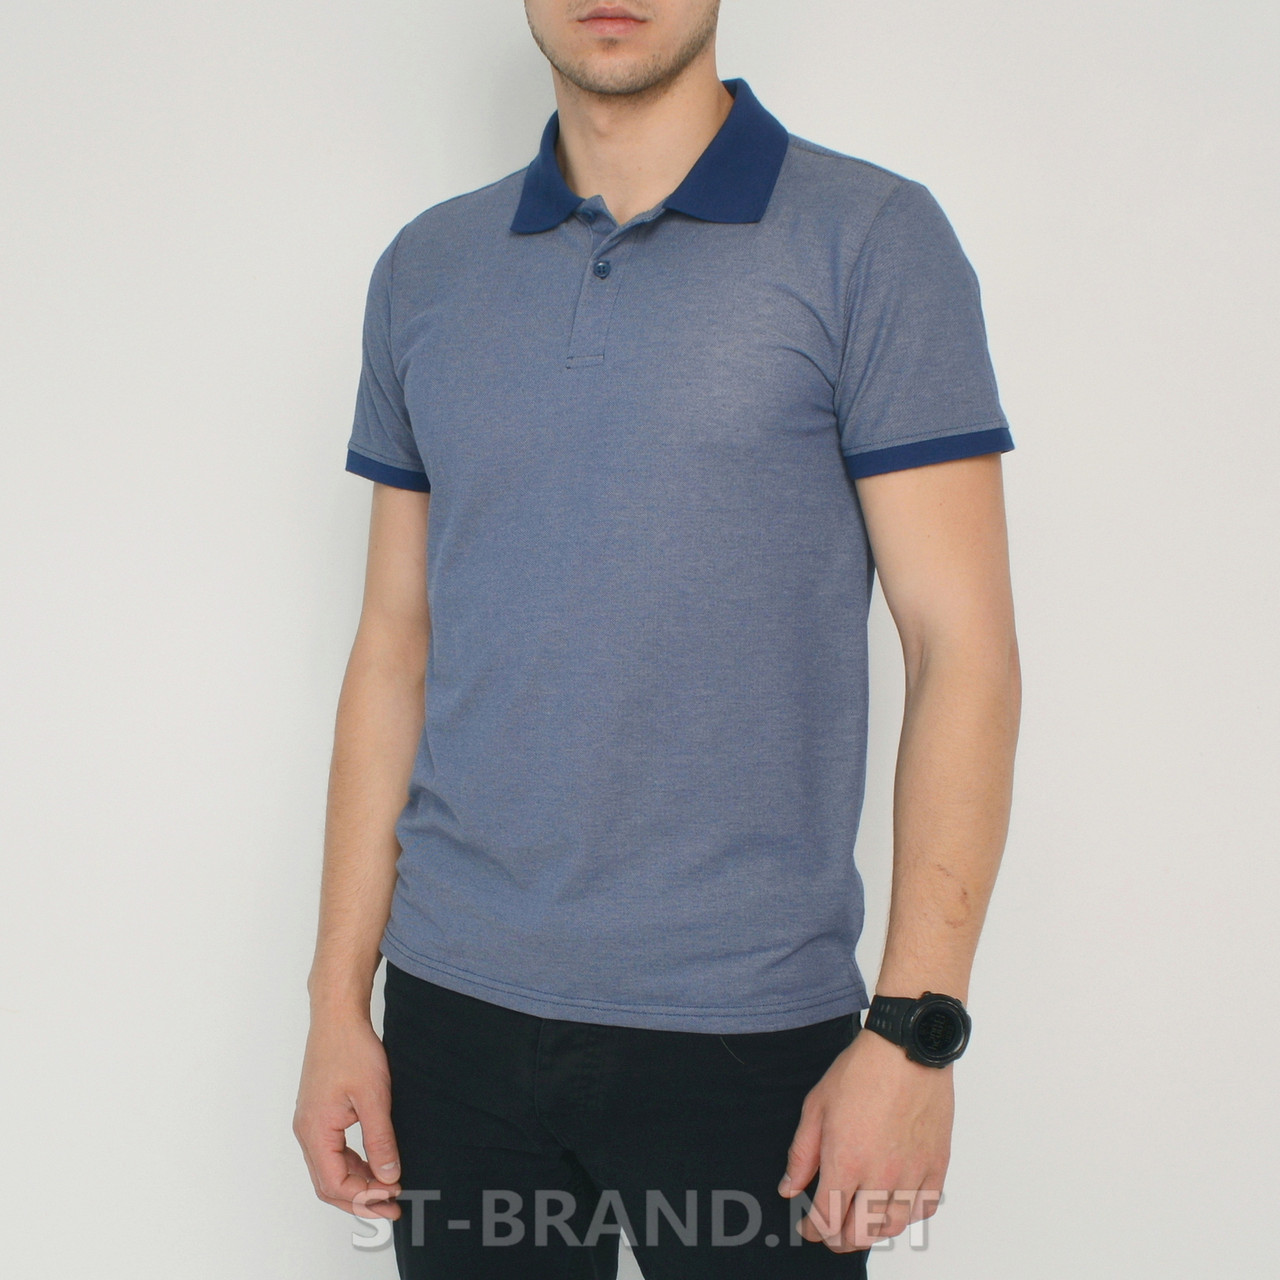 Розміри: М (48). Чоловіча футболка поло з натурального бавовняного матеріалу, теніска - синя джинсова